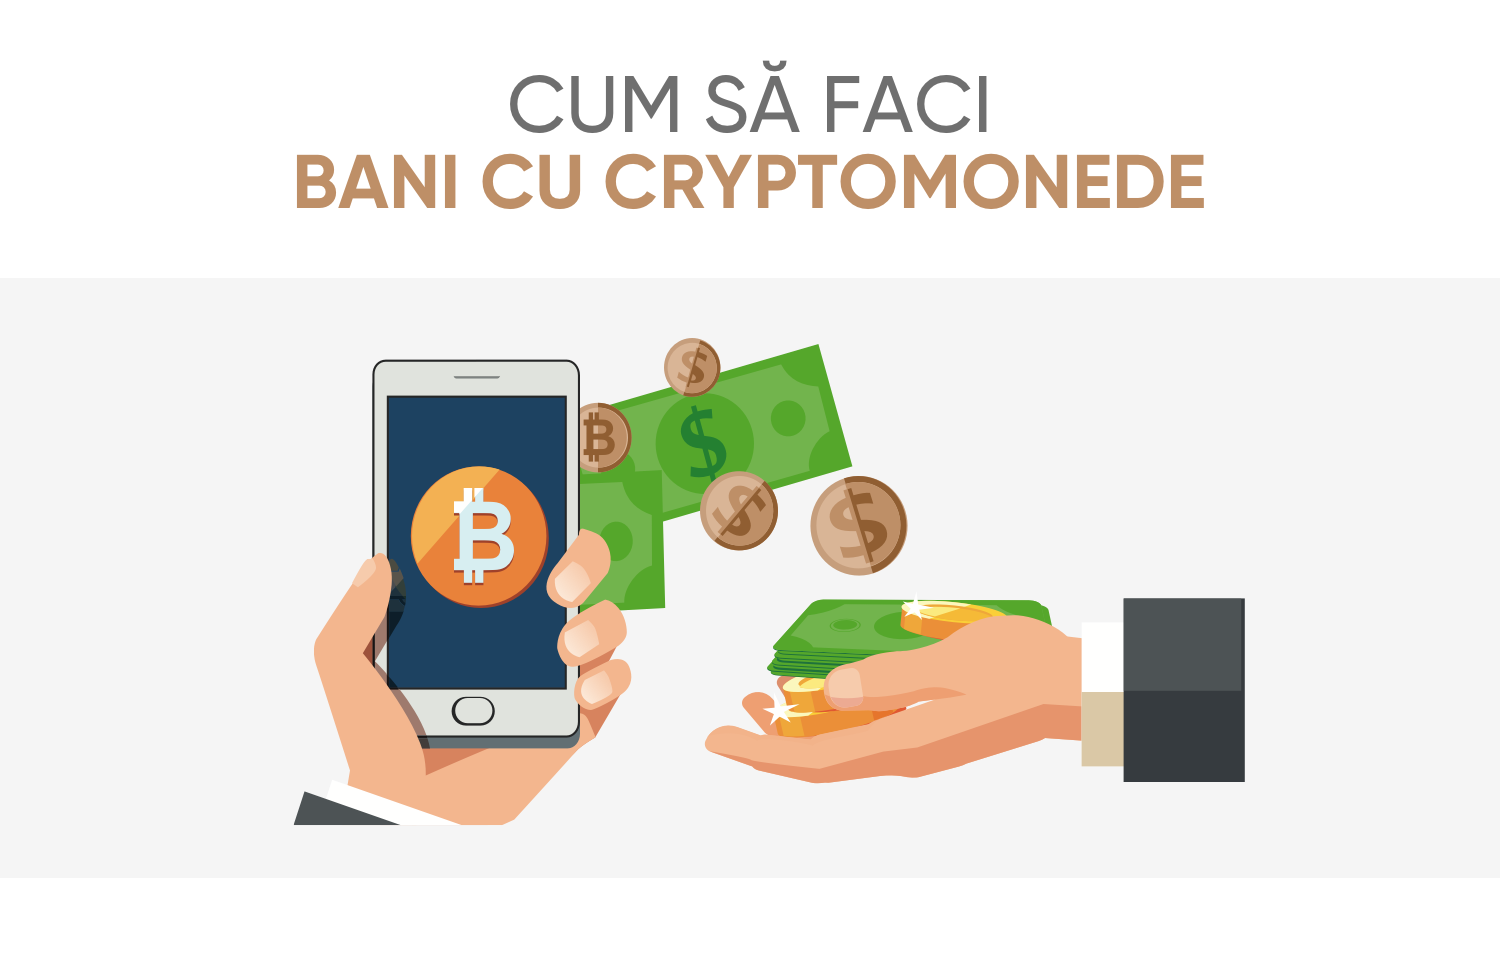 Cum Să Faci Bani Cu Bitcoin: 5 Pași Spre Libertatea Financiară